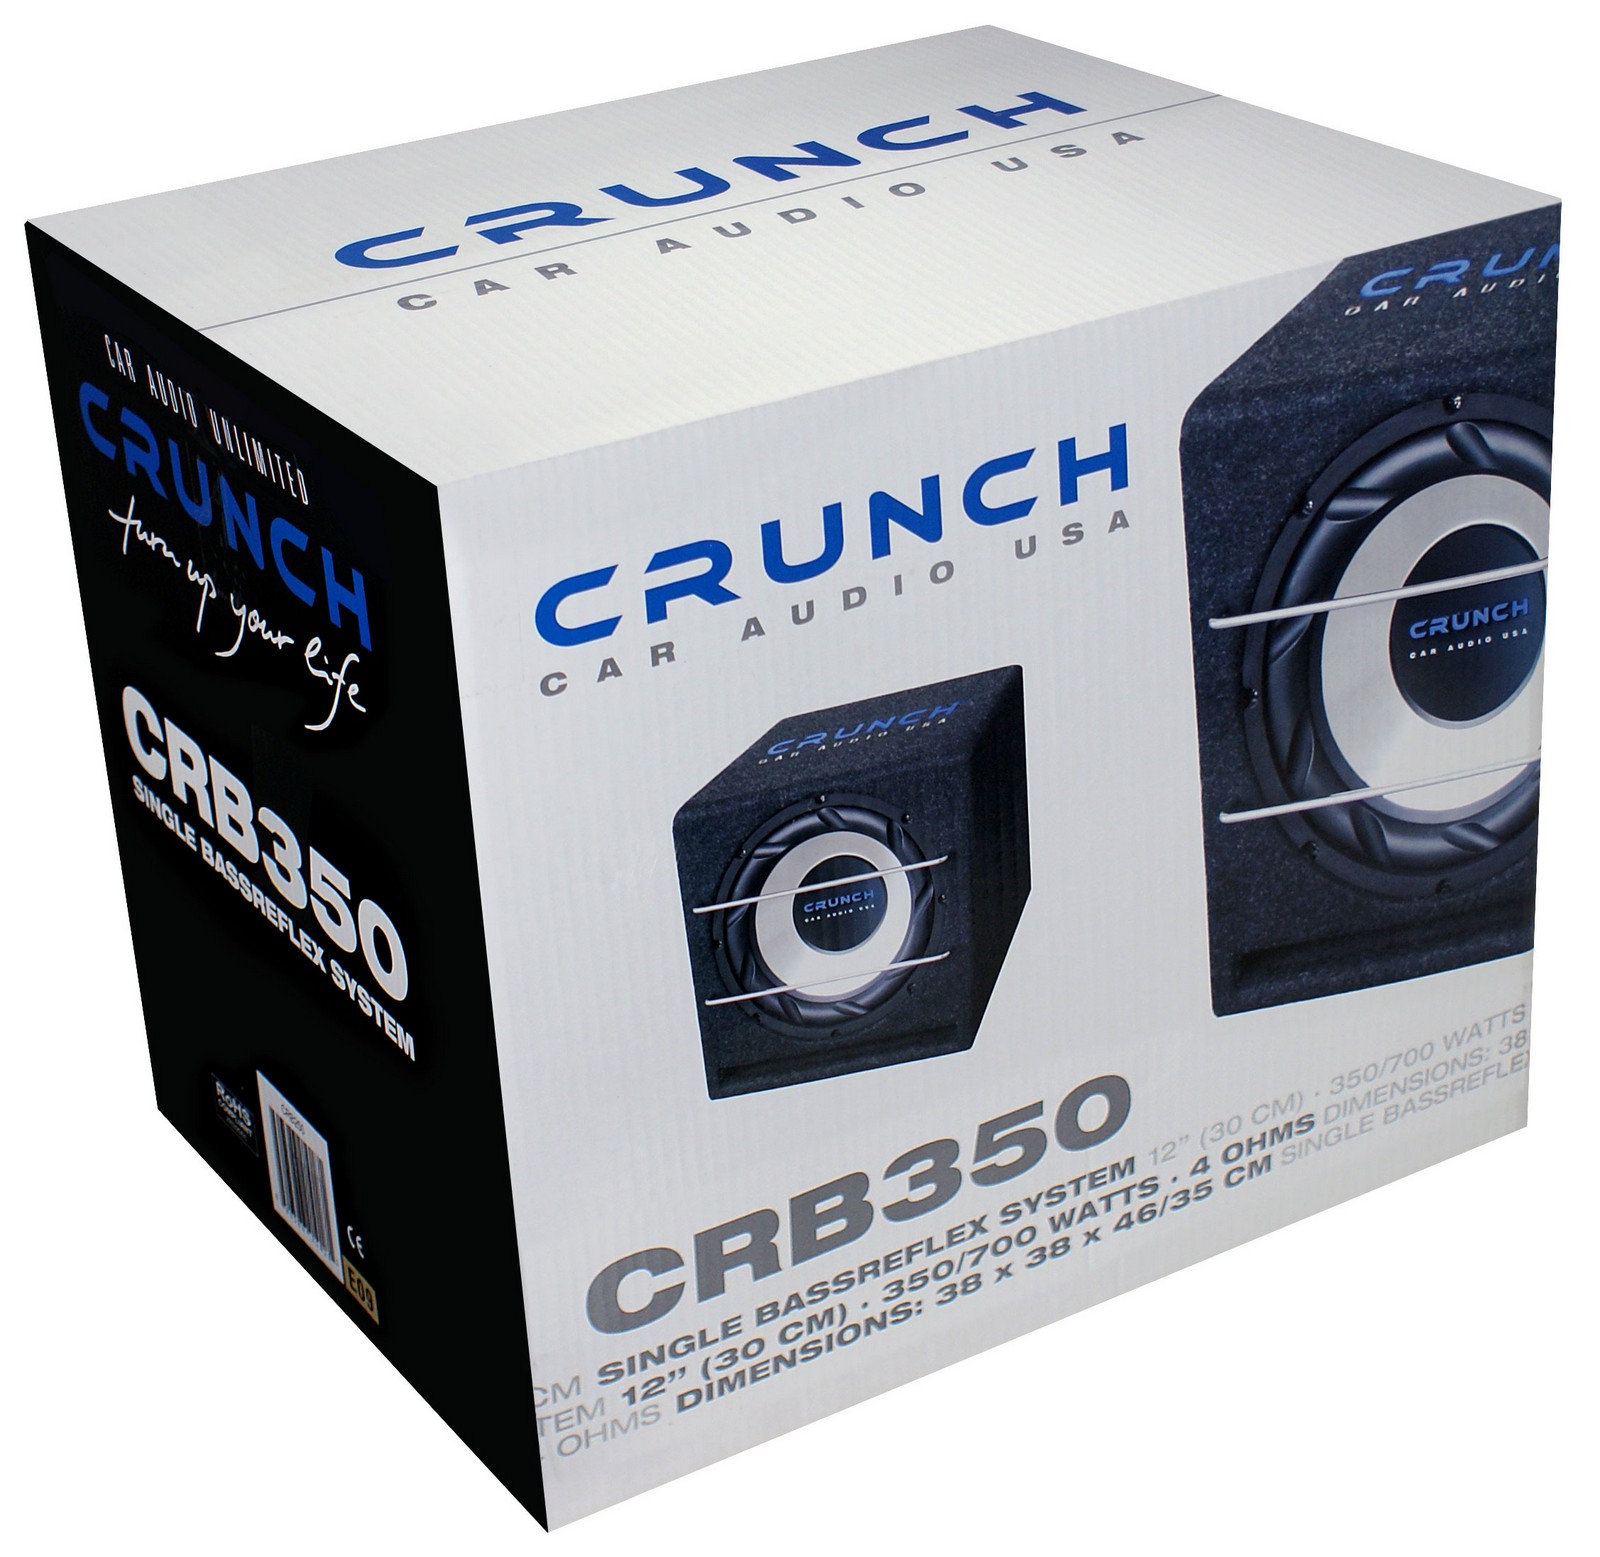 Crunch CRB-350 30 centimetri bass reflex 700 Watt CRB350 